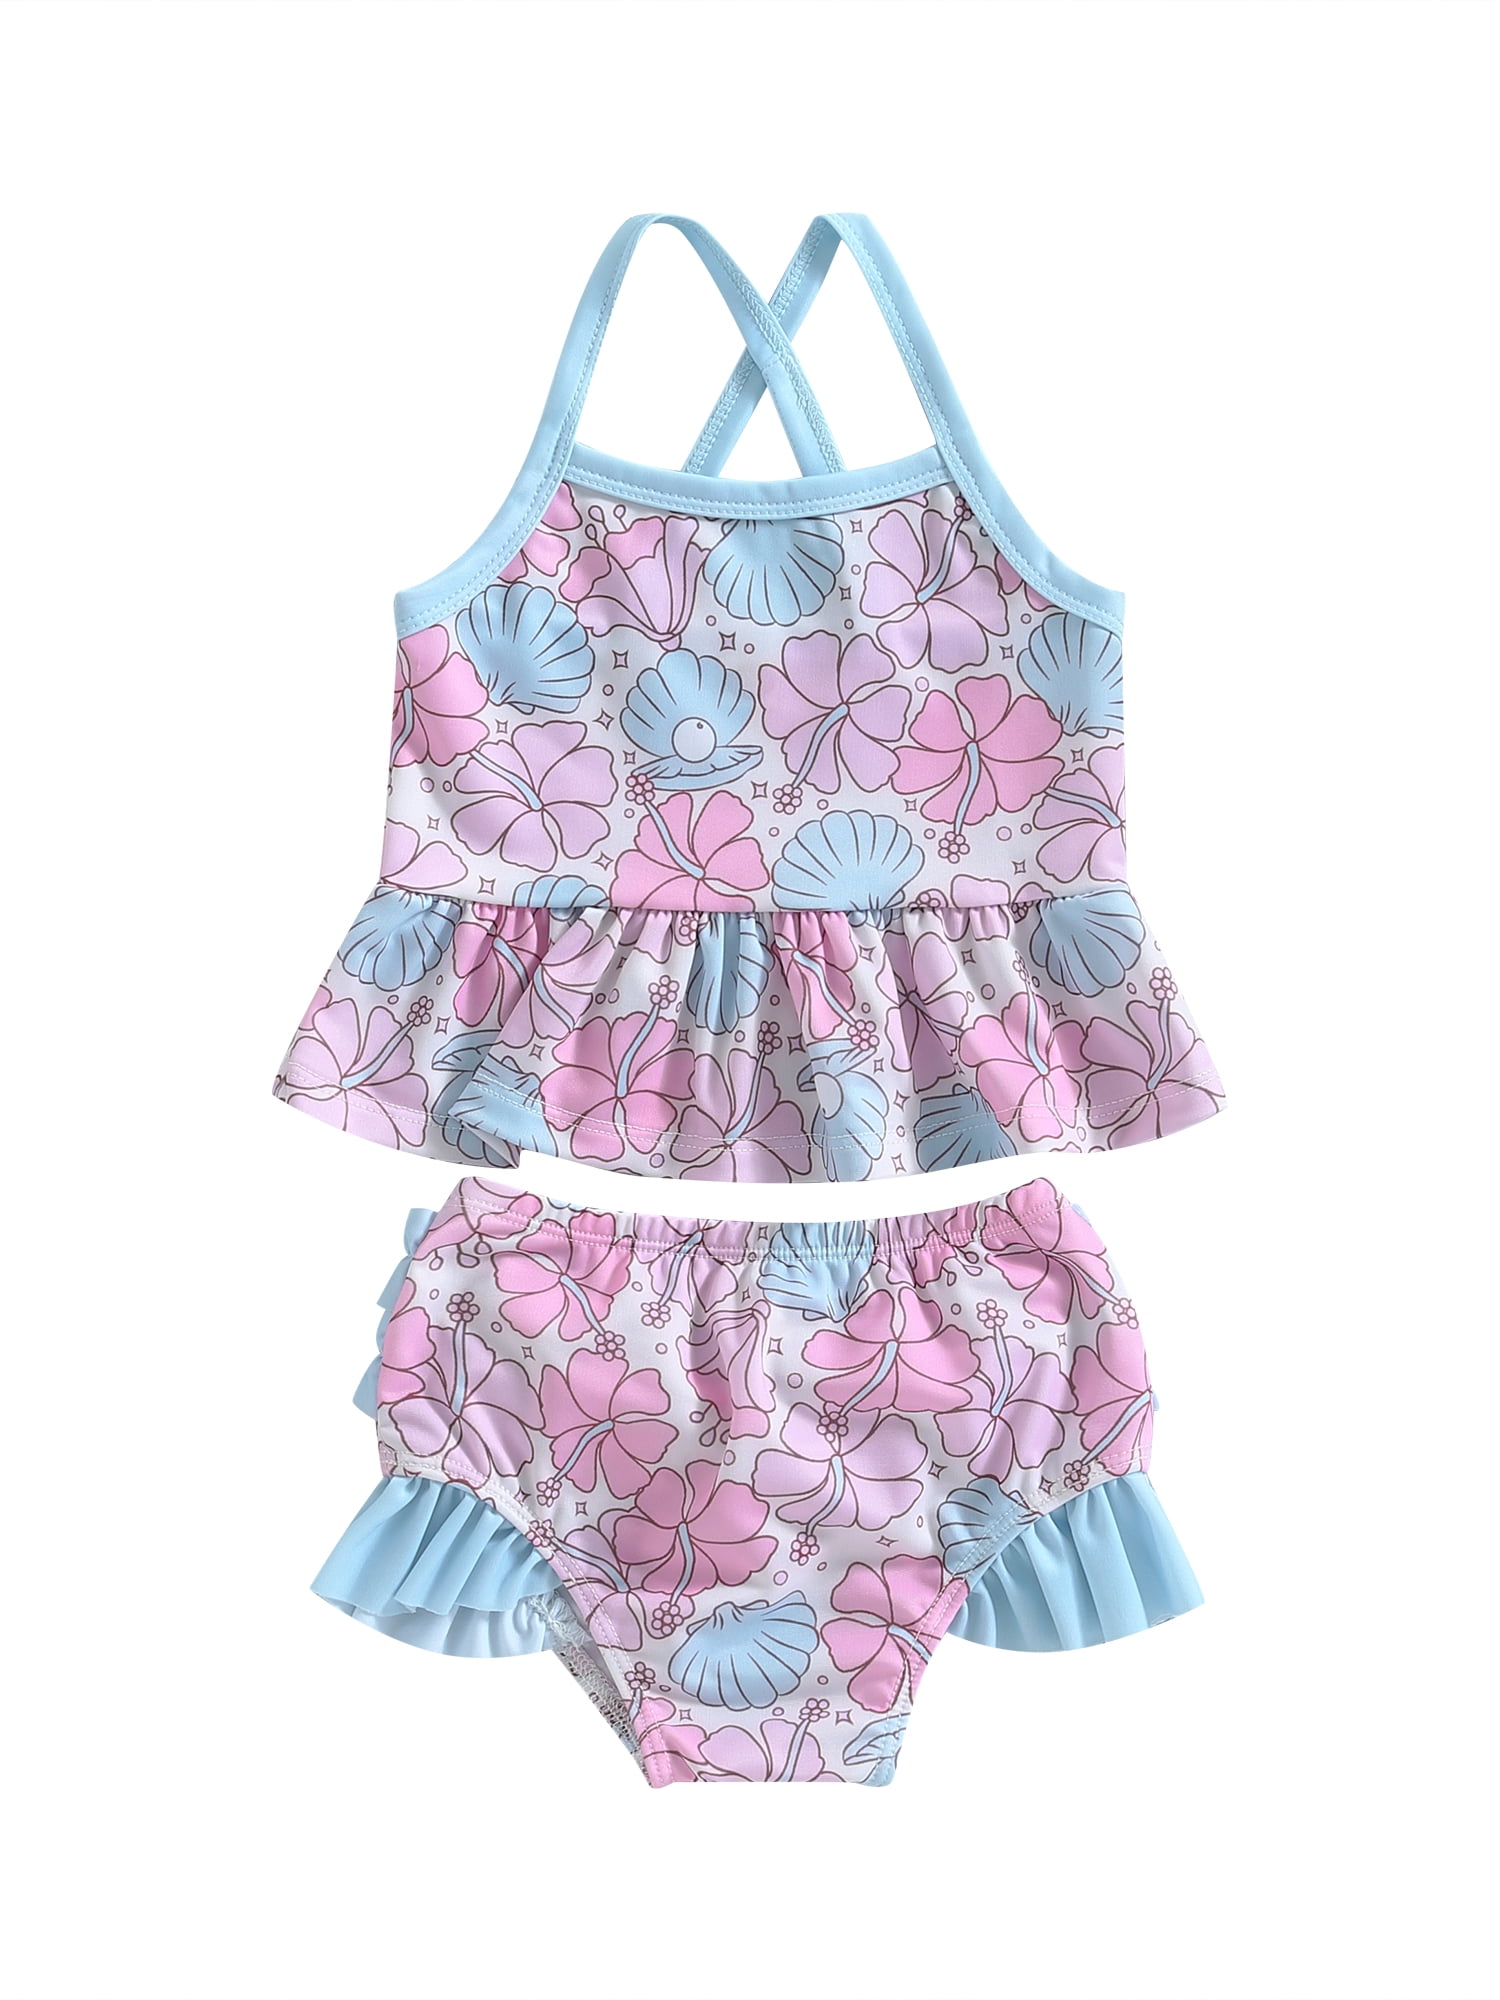 Bagilaanoe Toddler Baby Girls Swimsuits 2 Piece Bikinis Set Floral ...